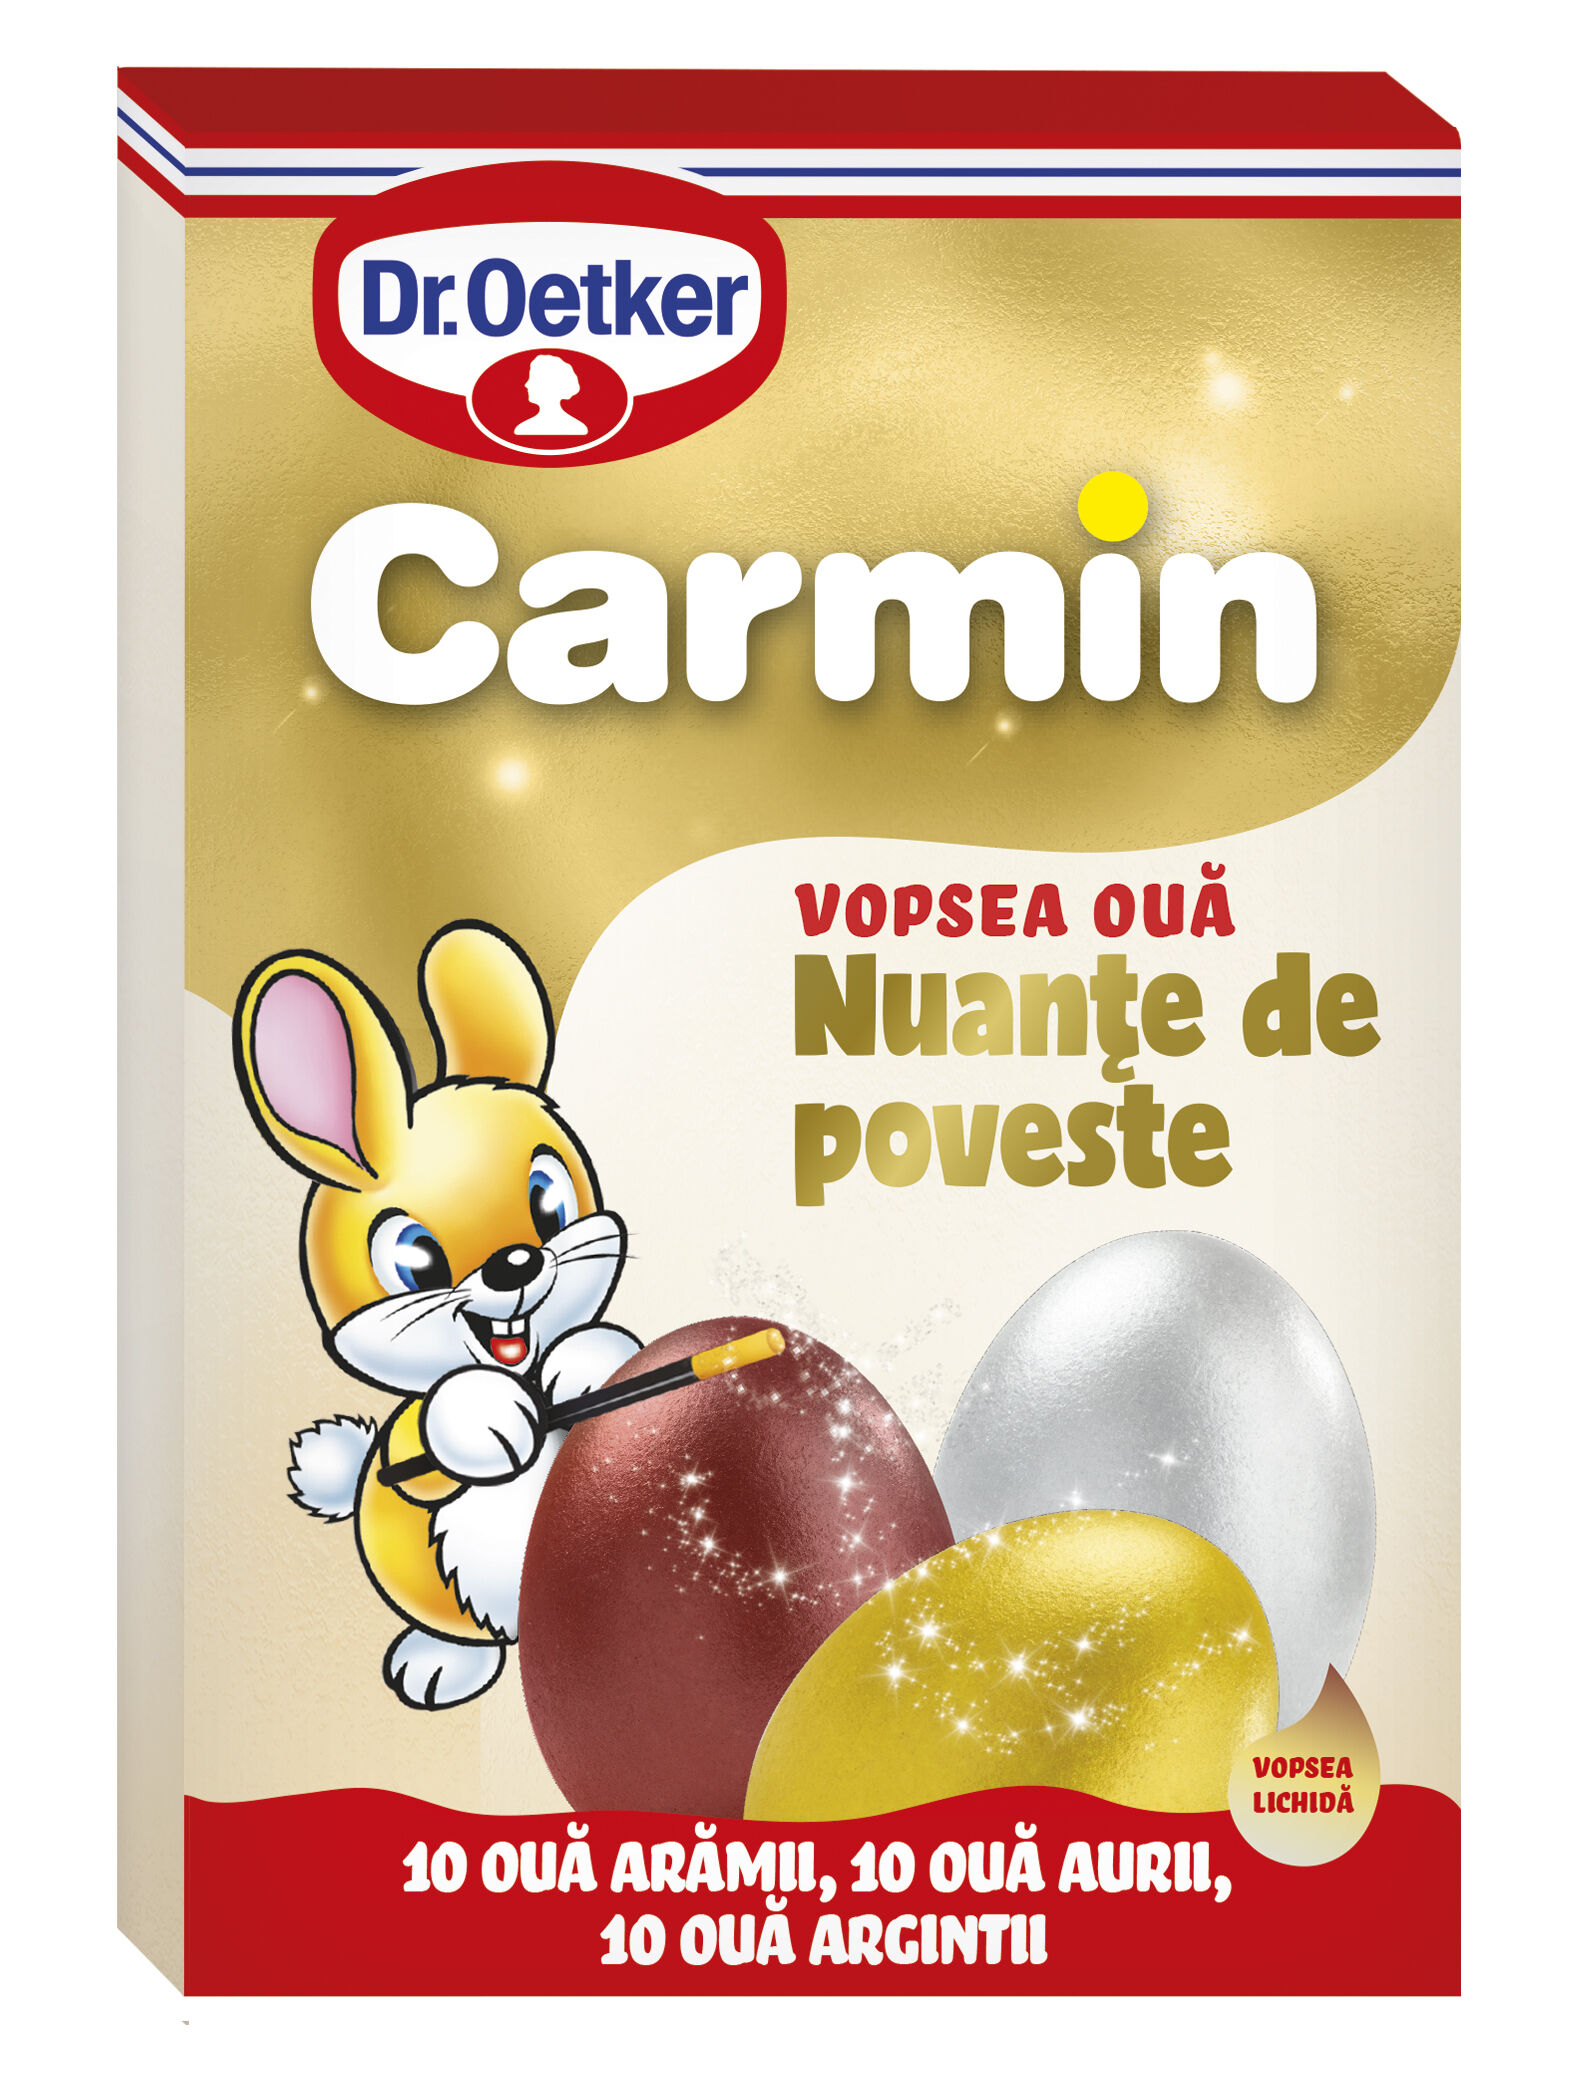 Vopsea lichida nuante de poveste Carmin pentru 30 oua